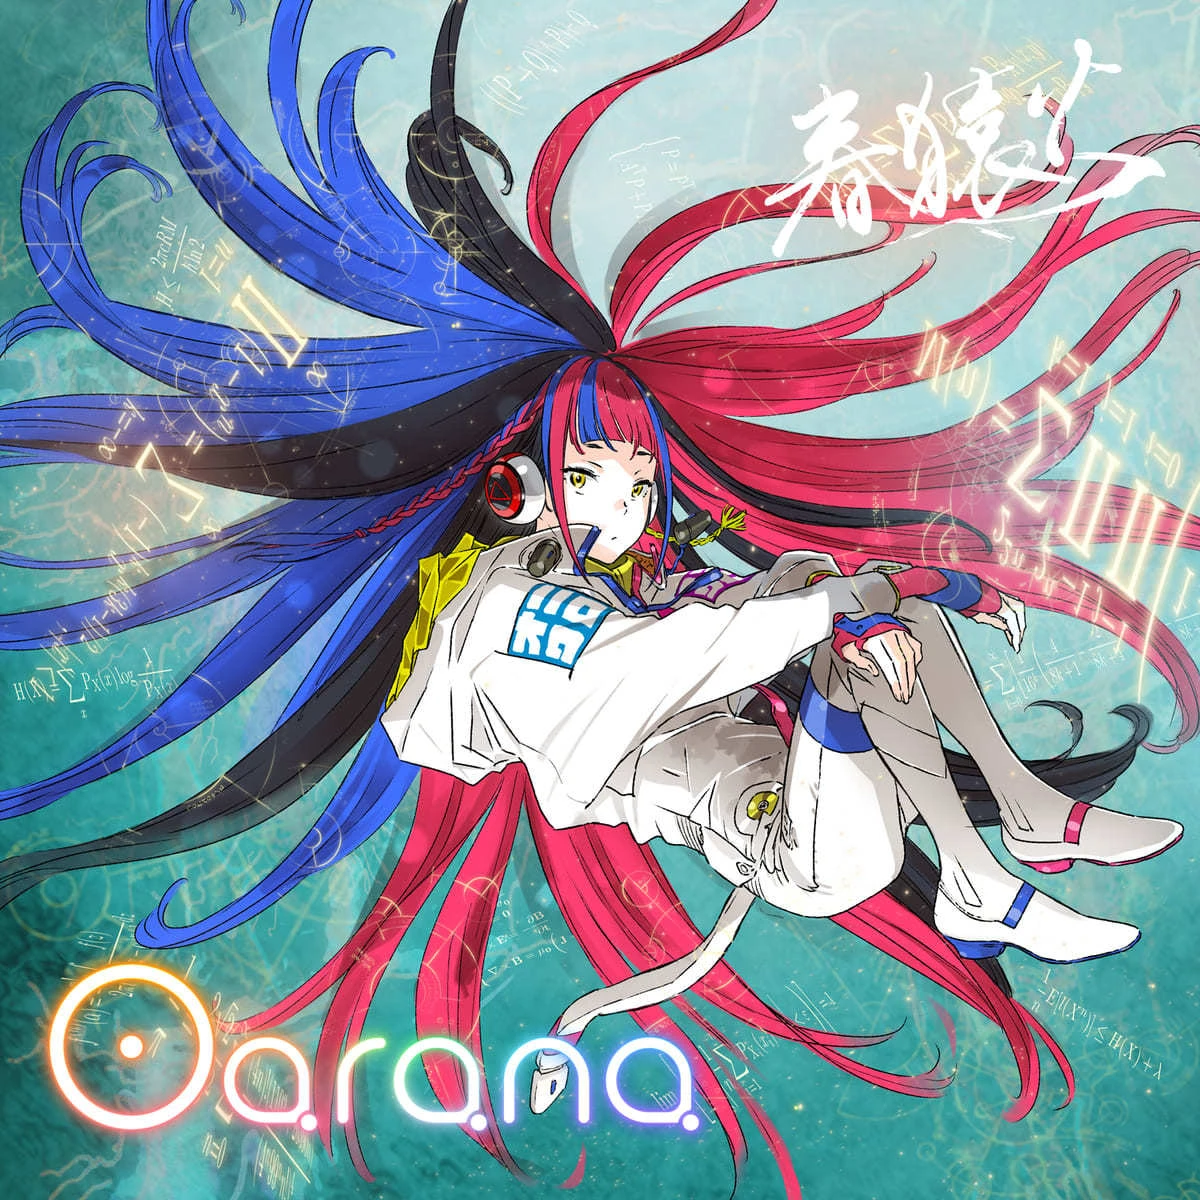 吉田健一と磯光雄による春猿火「Oarana」ジャケ 『地球外少年少女』主題歌